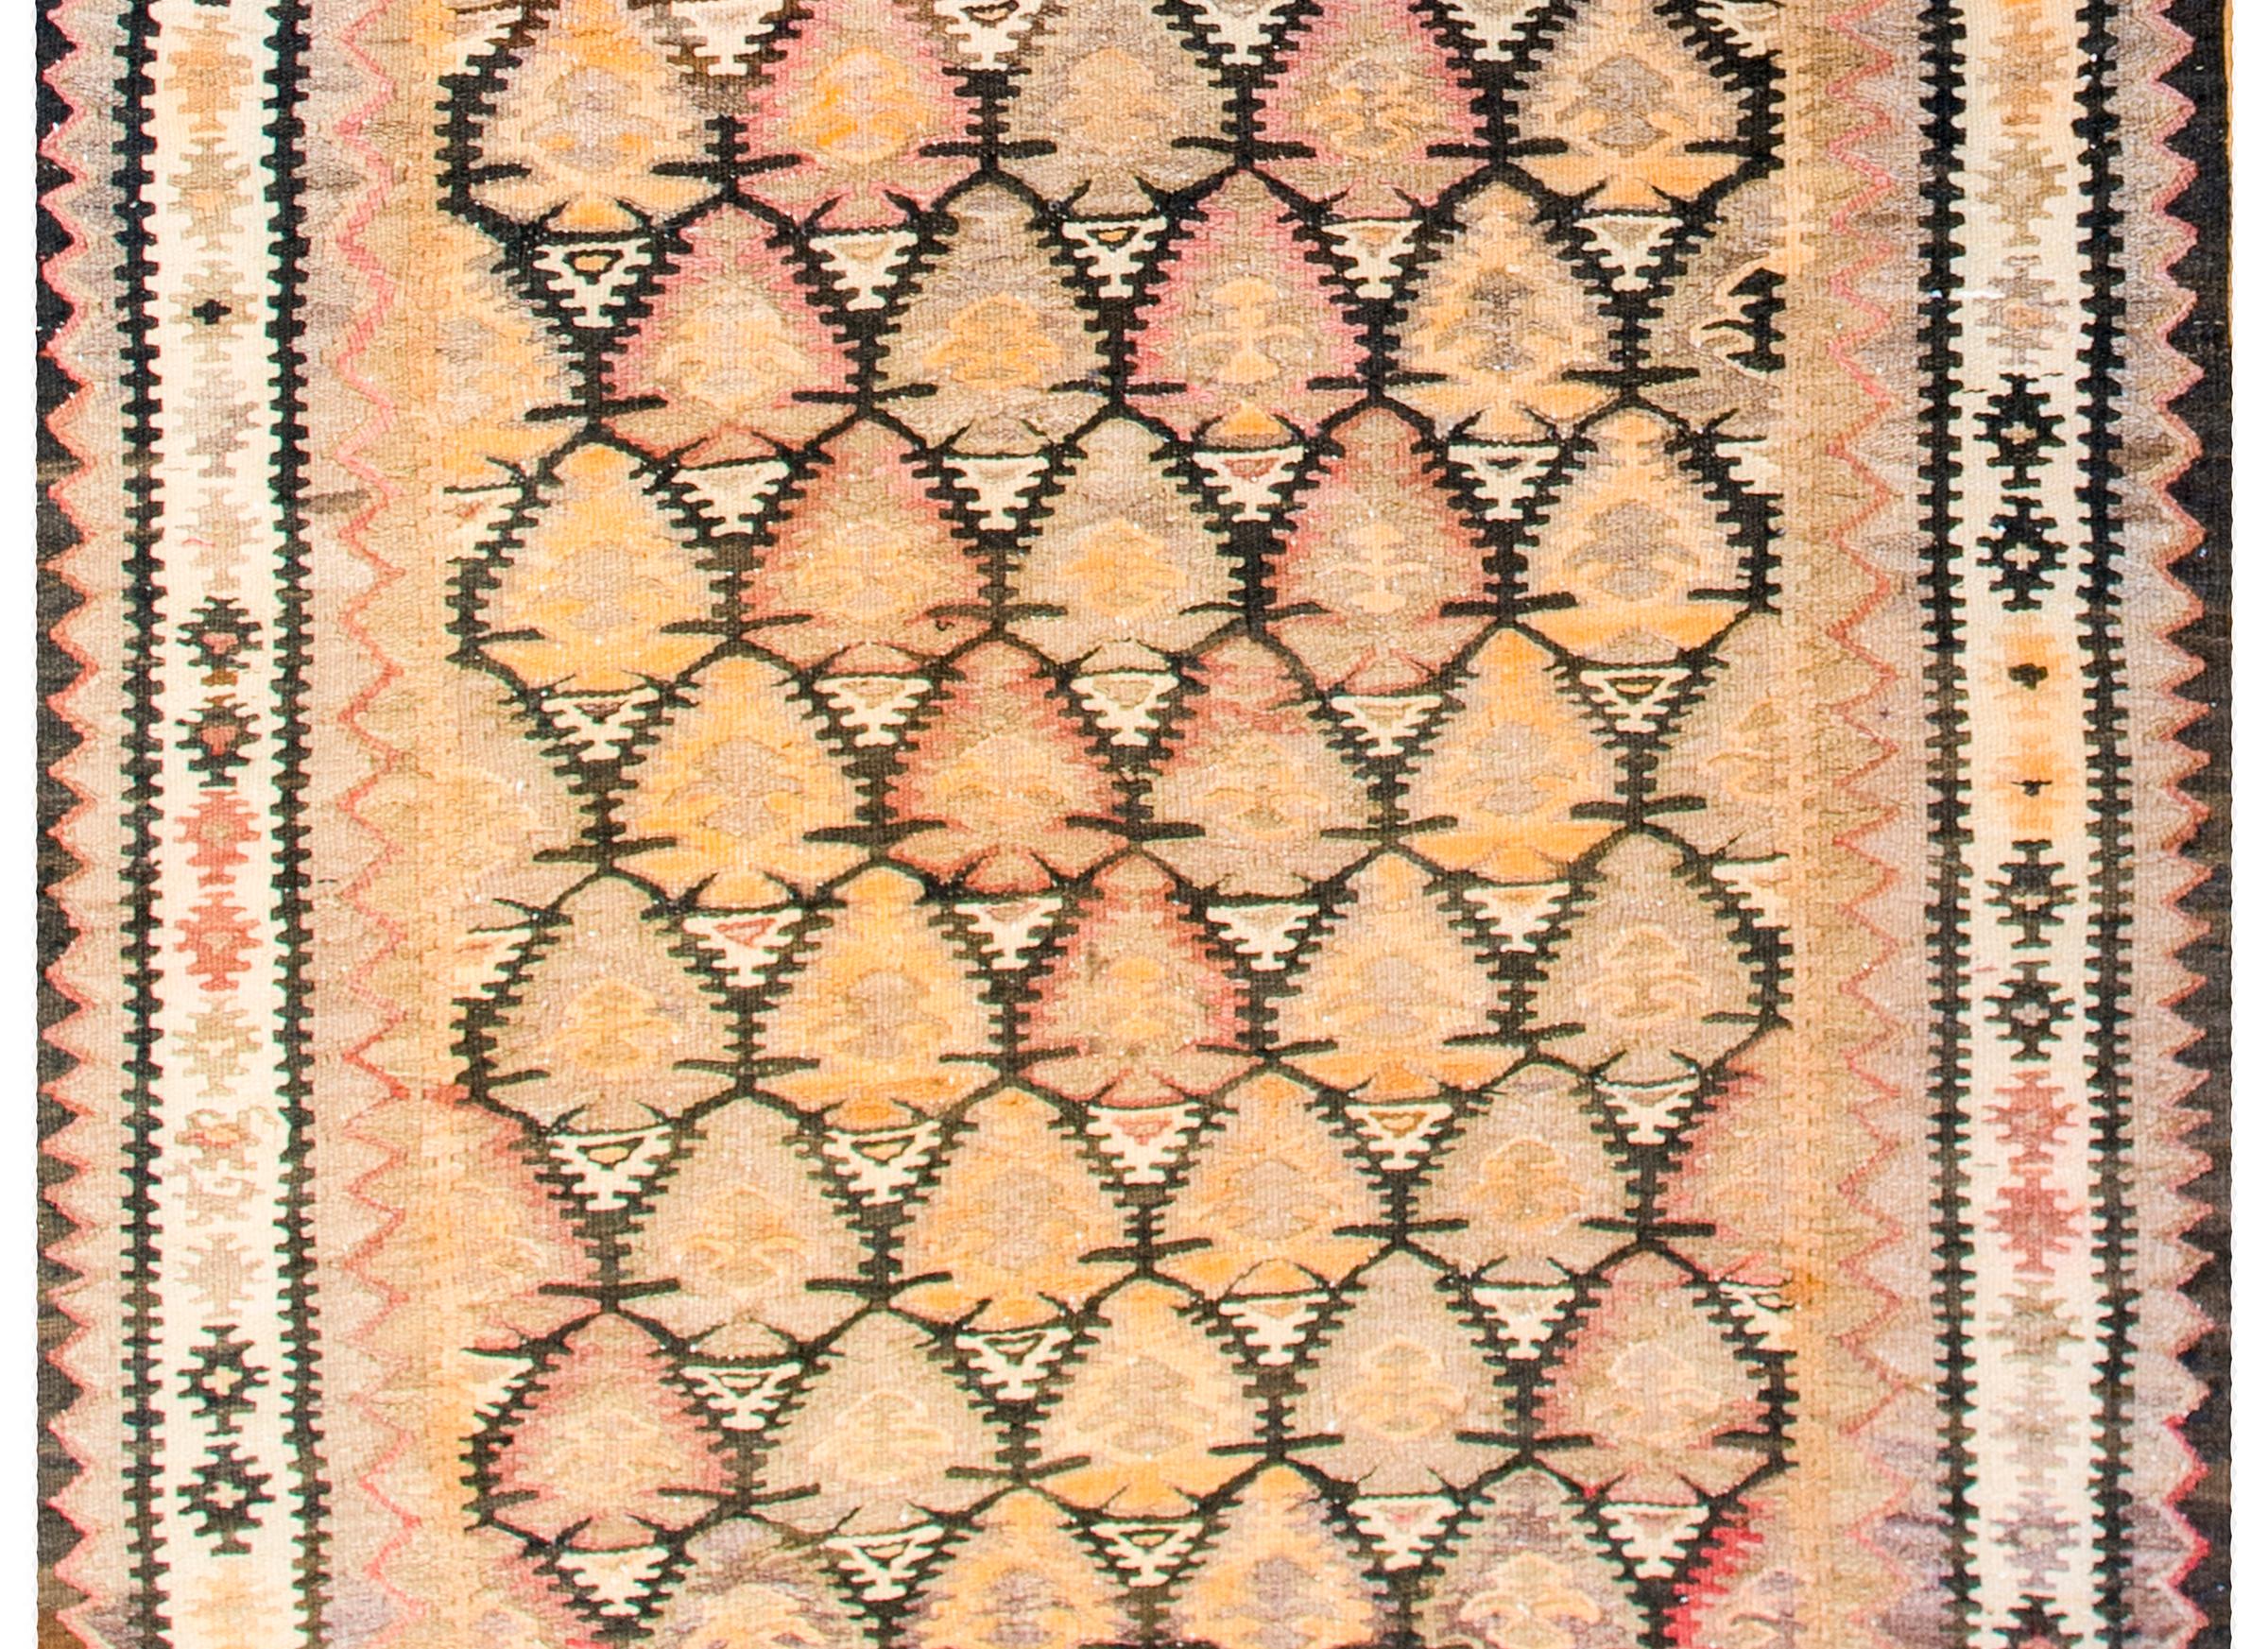 Ein schöner persischer Qazvin-Kilim-Teppich aus der Mitte des 20. Jahrhunderts mit einem Allover-Lebensbaum-Muster, gewebt aus orangefarbener, lilafarbener, karminroter und naturfarbener, pflanzengefärbter Wolle. Die Bordüre ist komplex, mit drei